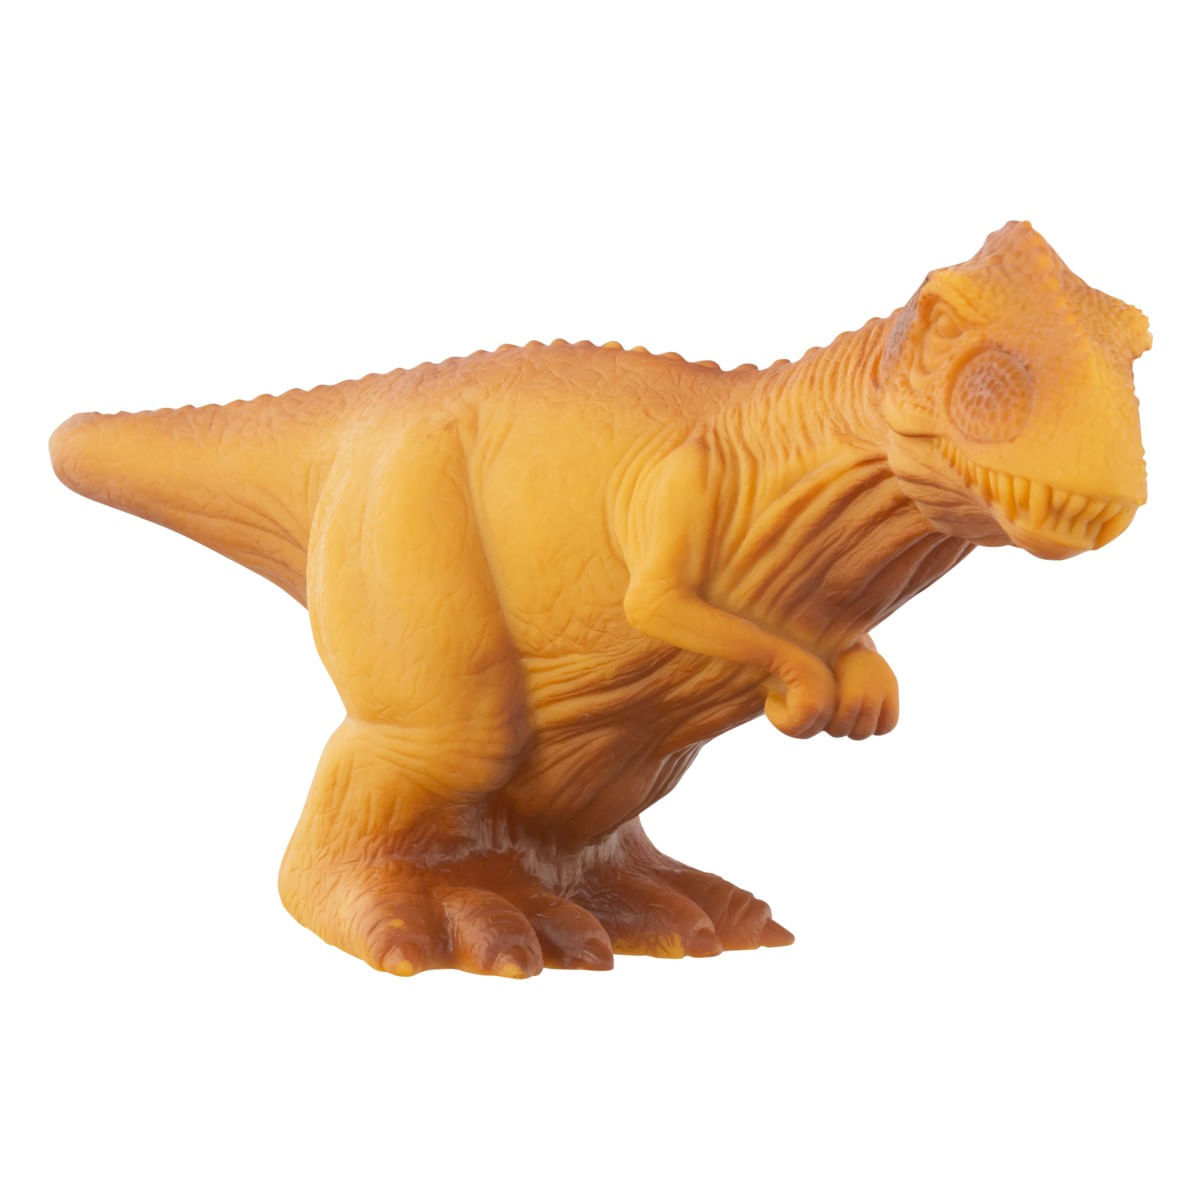 Preços baixos em Antigo dinossauro colecionável